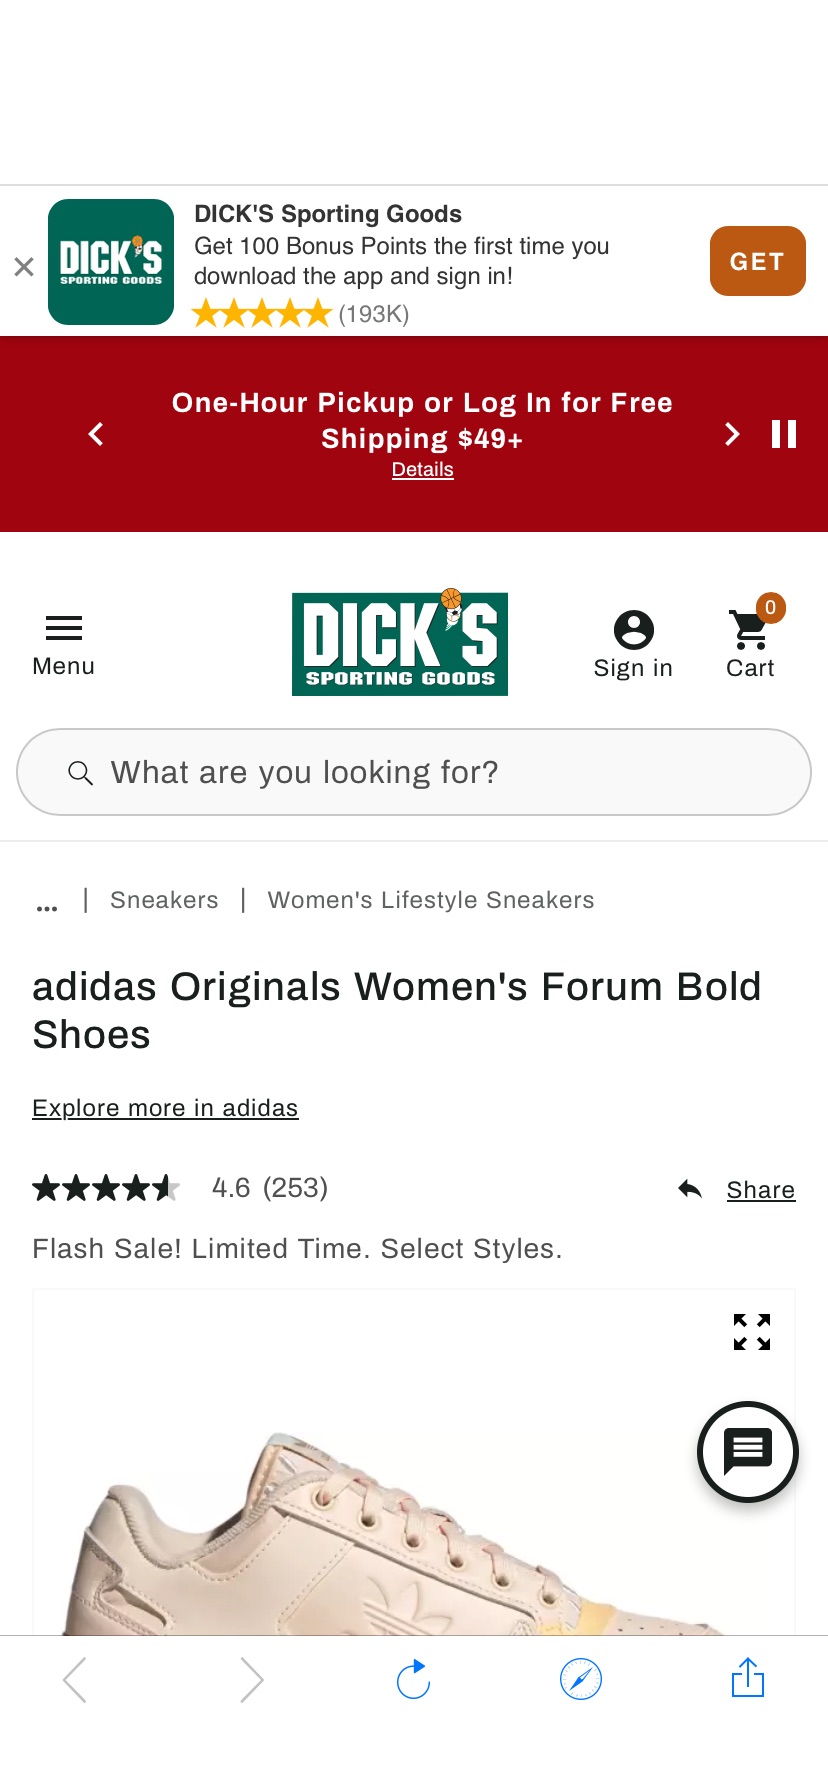 adidas Originals Women's Forum Bold Shoes | Dick's Sporting Goods